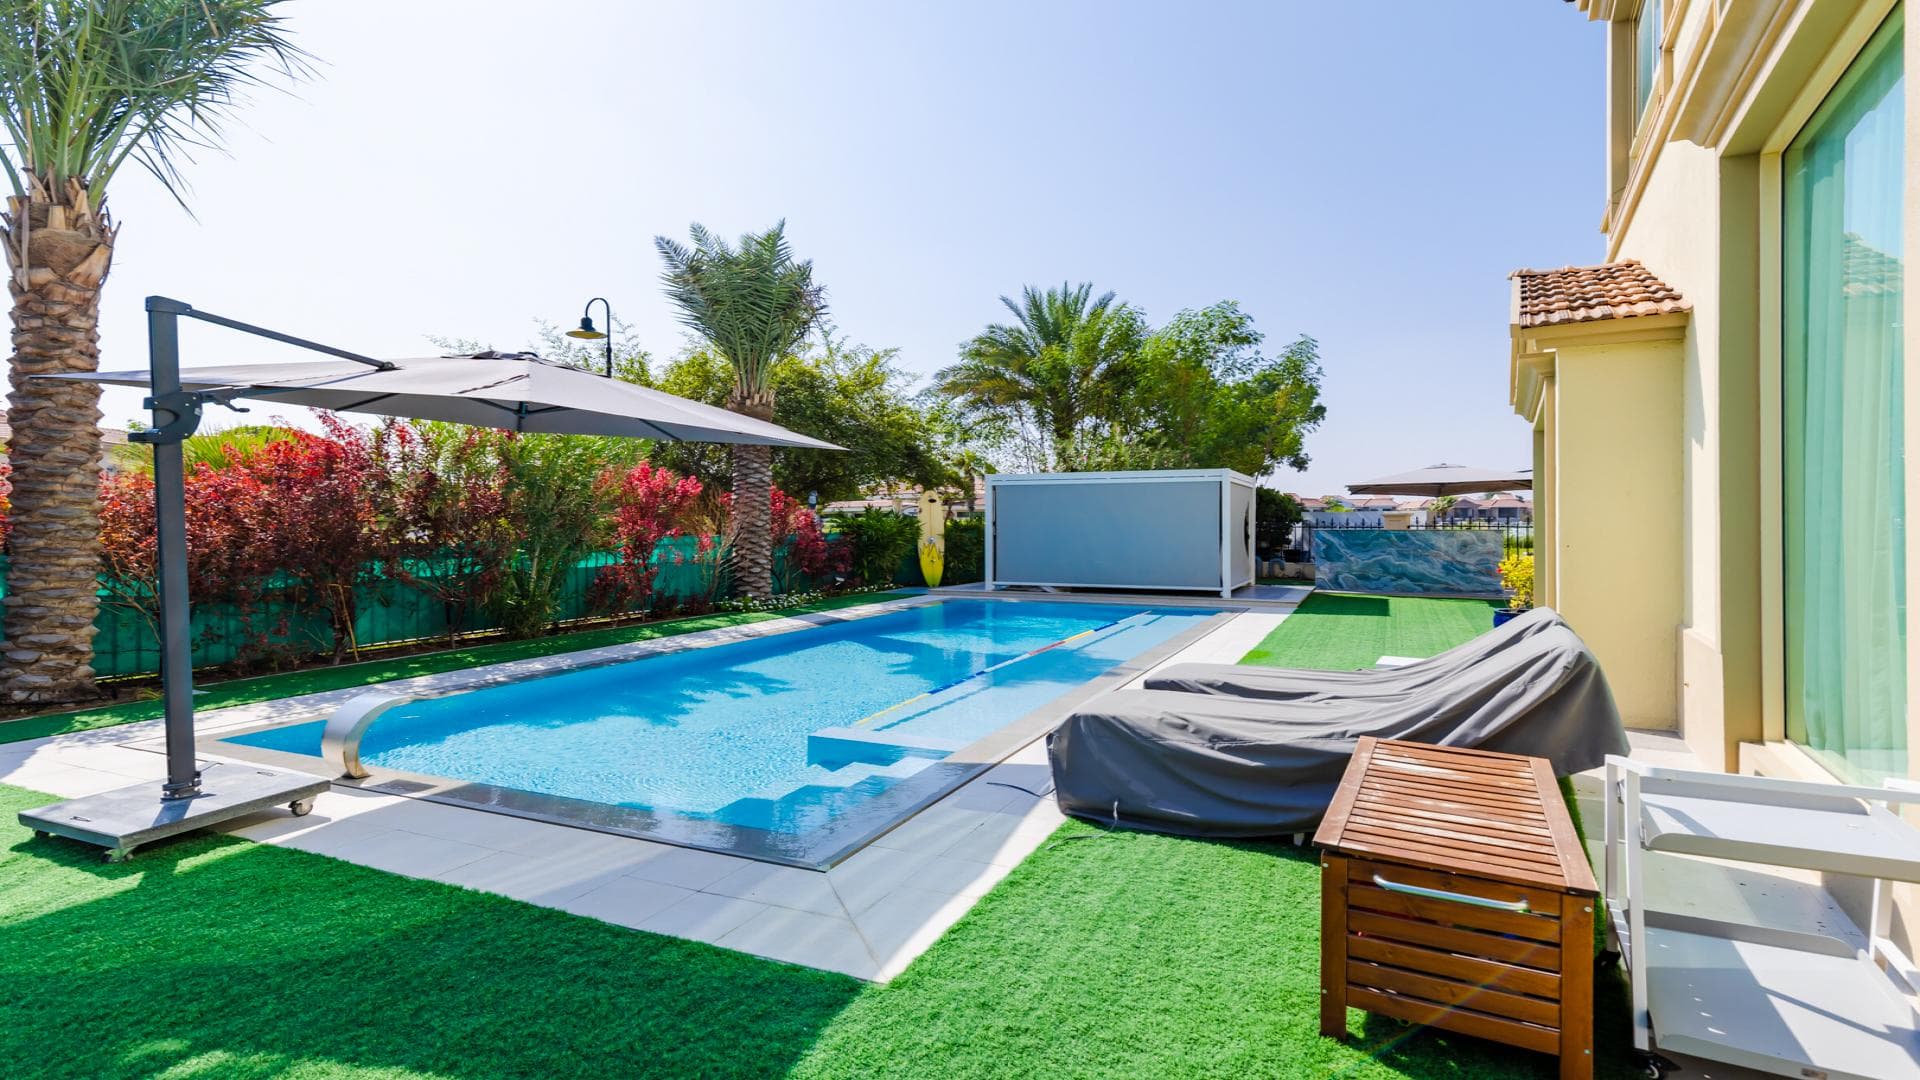 4 Bedroom Villa For Rent Al Thamam 13 Lp38674 2180ce7d10adc600.jpg